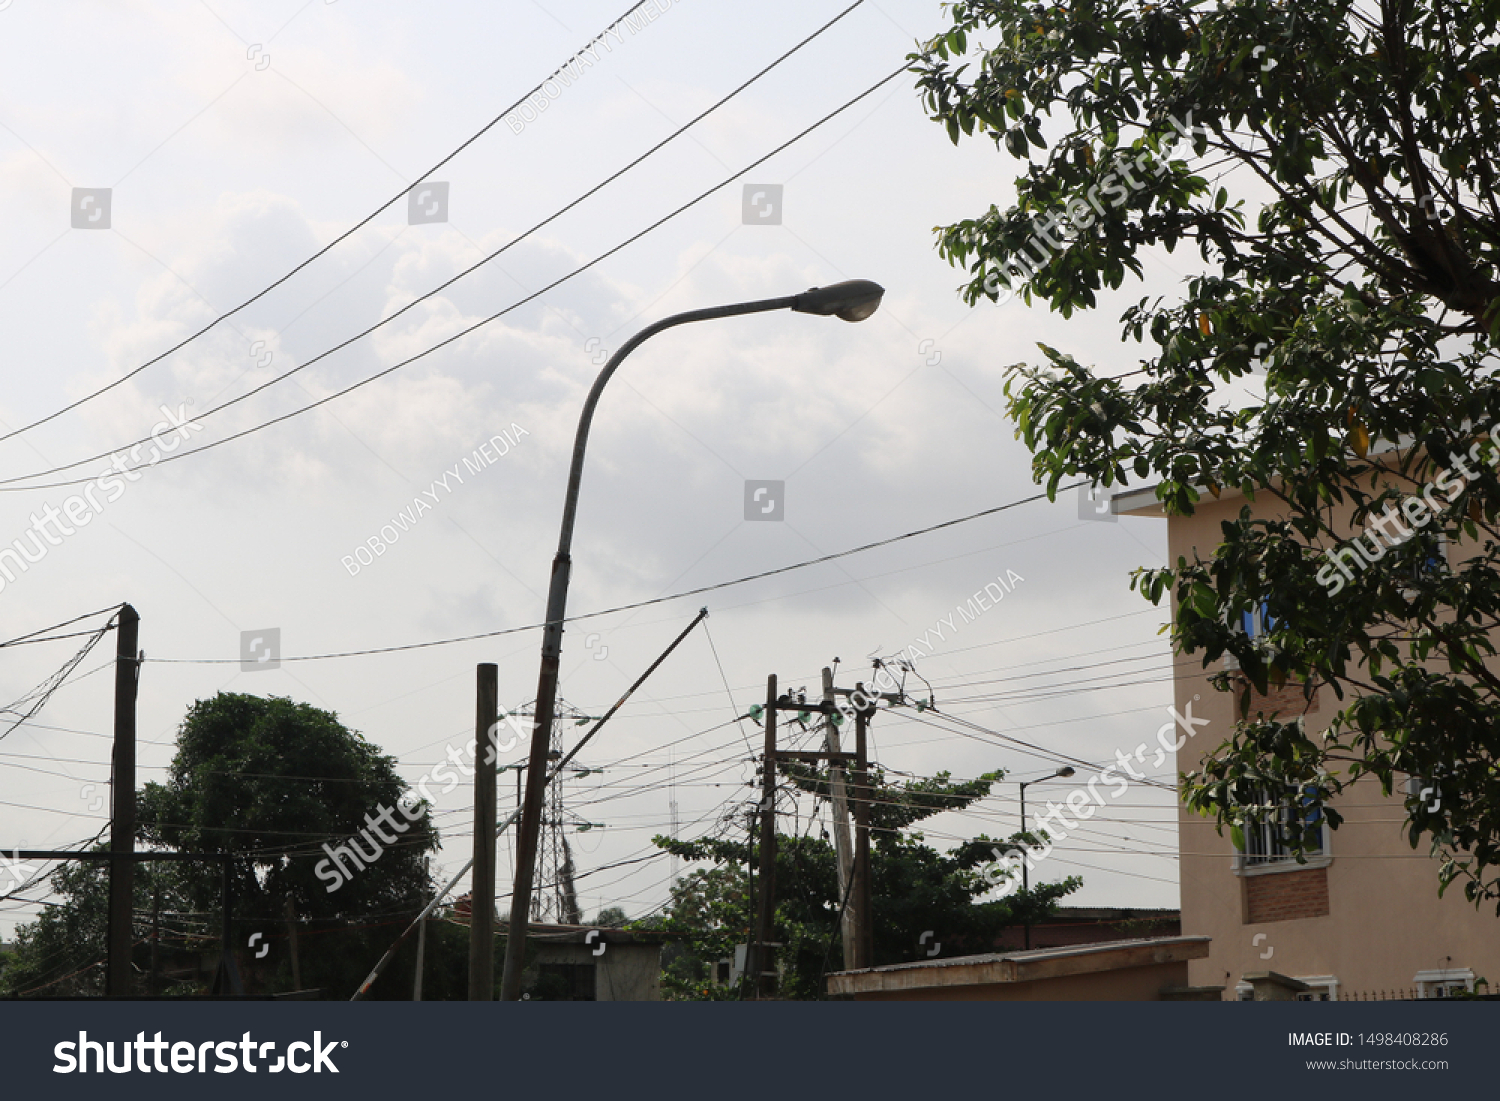 SKY/STREET LIGHT IN DAYLIGHT IN NIGERIA #1498408286